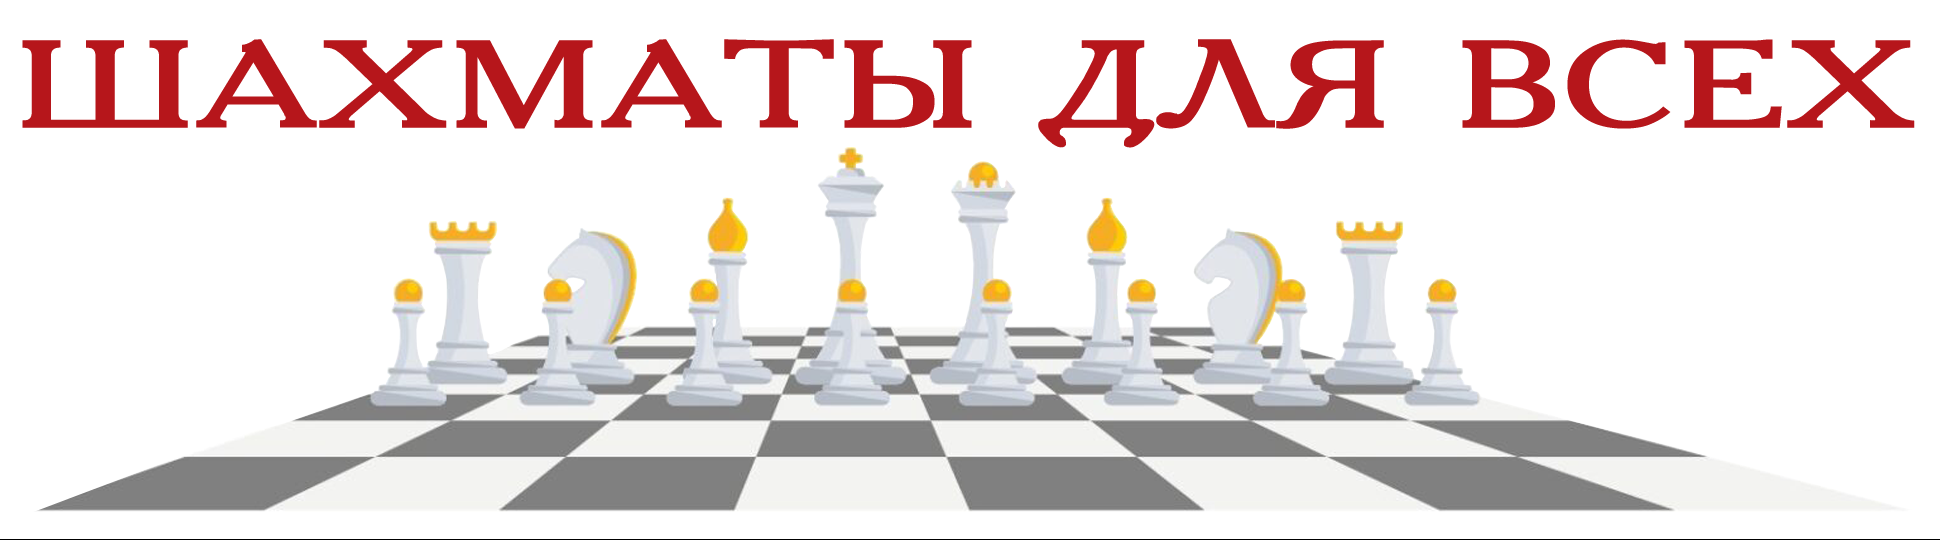 Каталог шахматных клубов